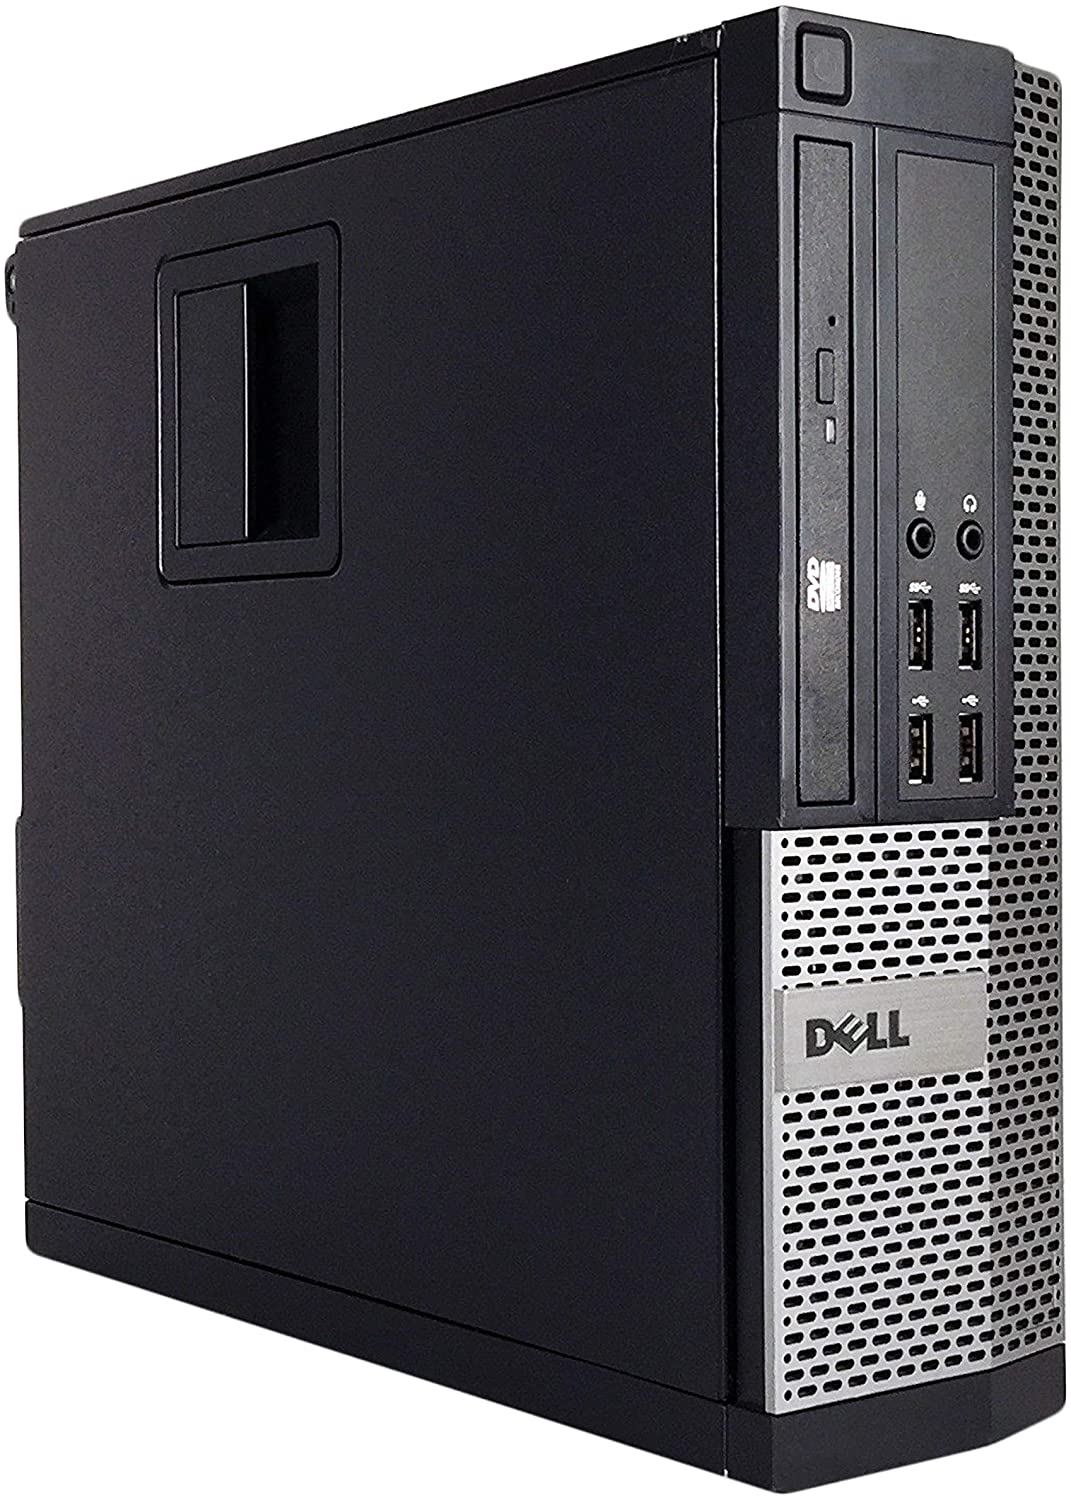 Dell 9020 SFF Business Desktop Mini Tower(Core i7-4790,8GB Ram